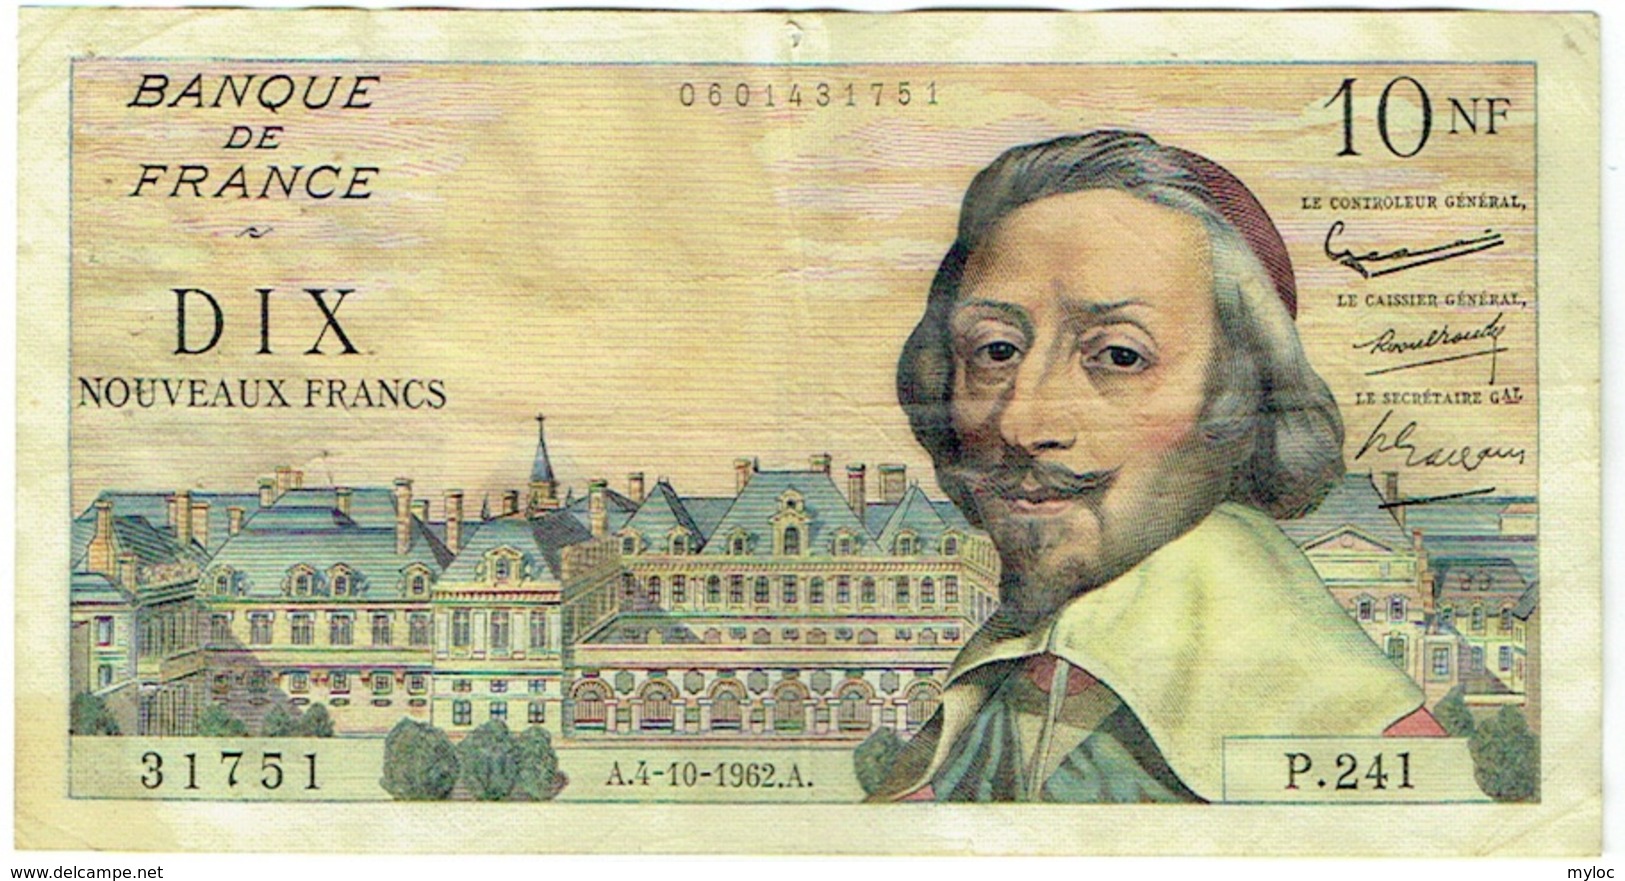 Billet. France. 10 Nouveaux Francs. 10 NF. Richelieu. 4-10-1962. - 10 NF 1959-1963 ''Richelieu''